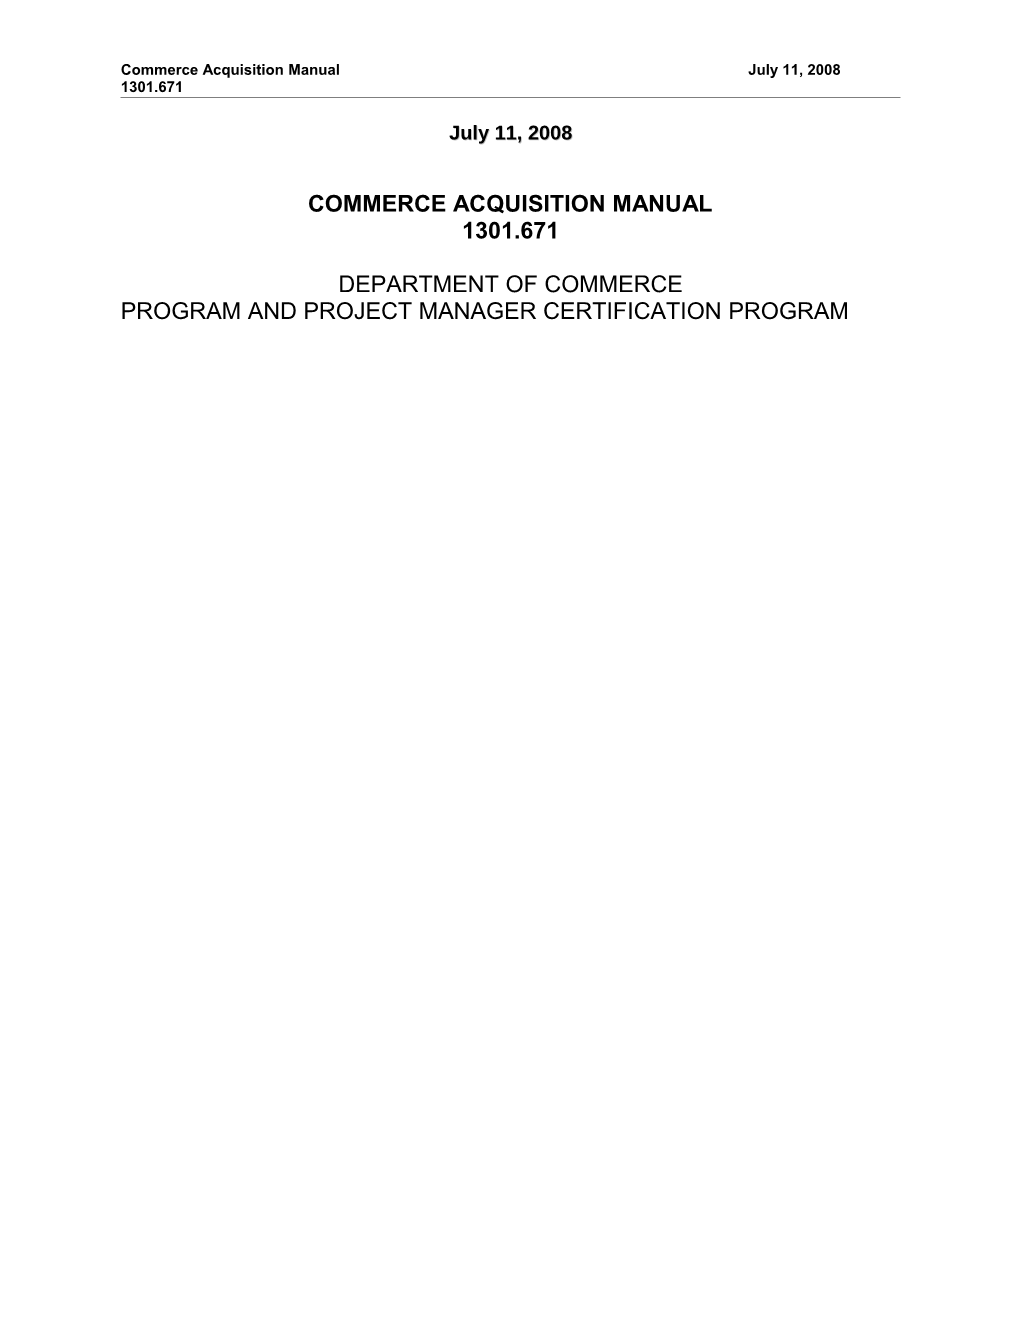 Commerce Acquisition Manual June 2008